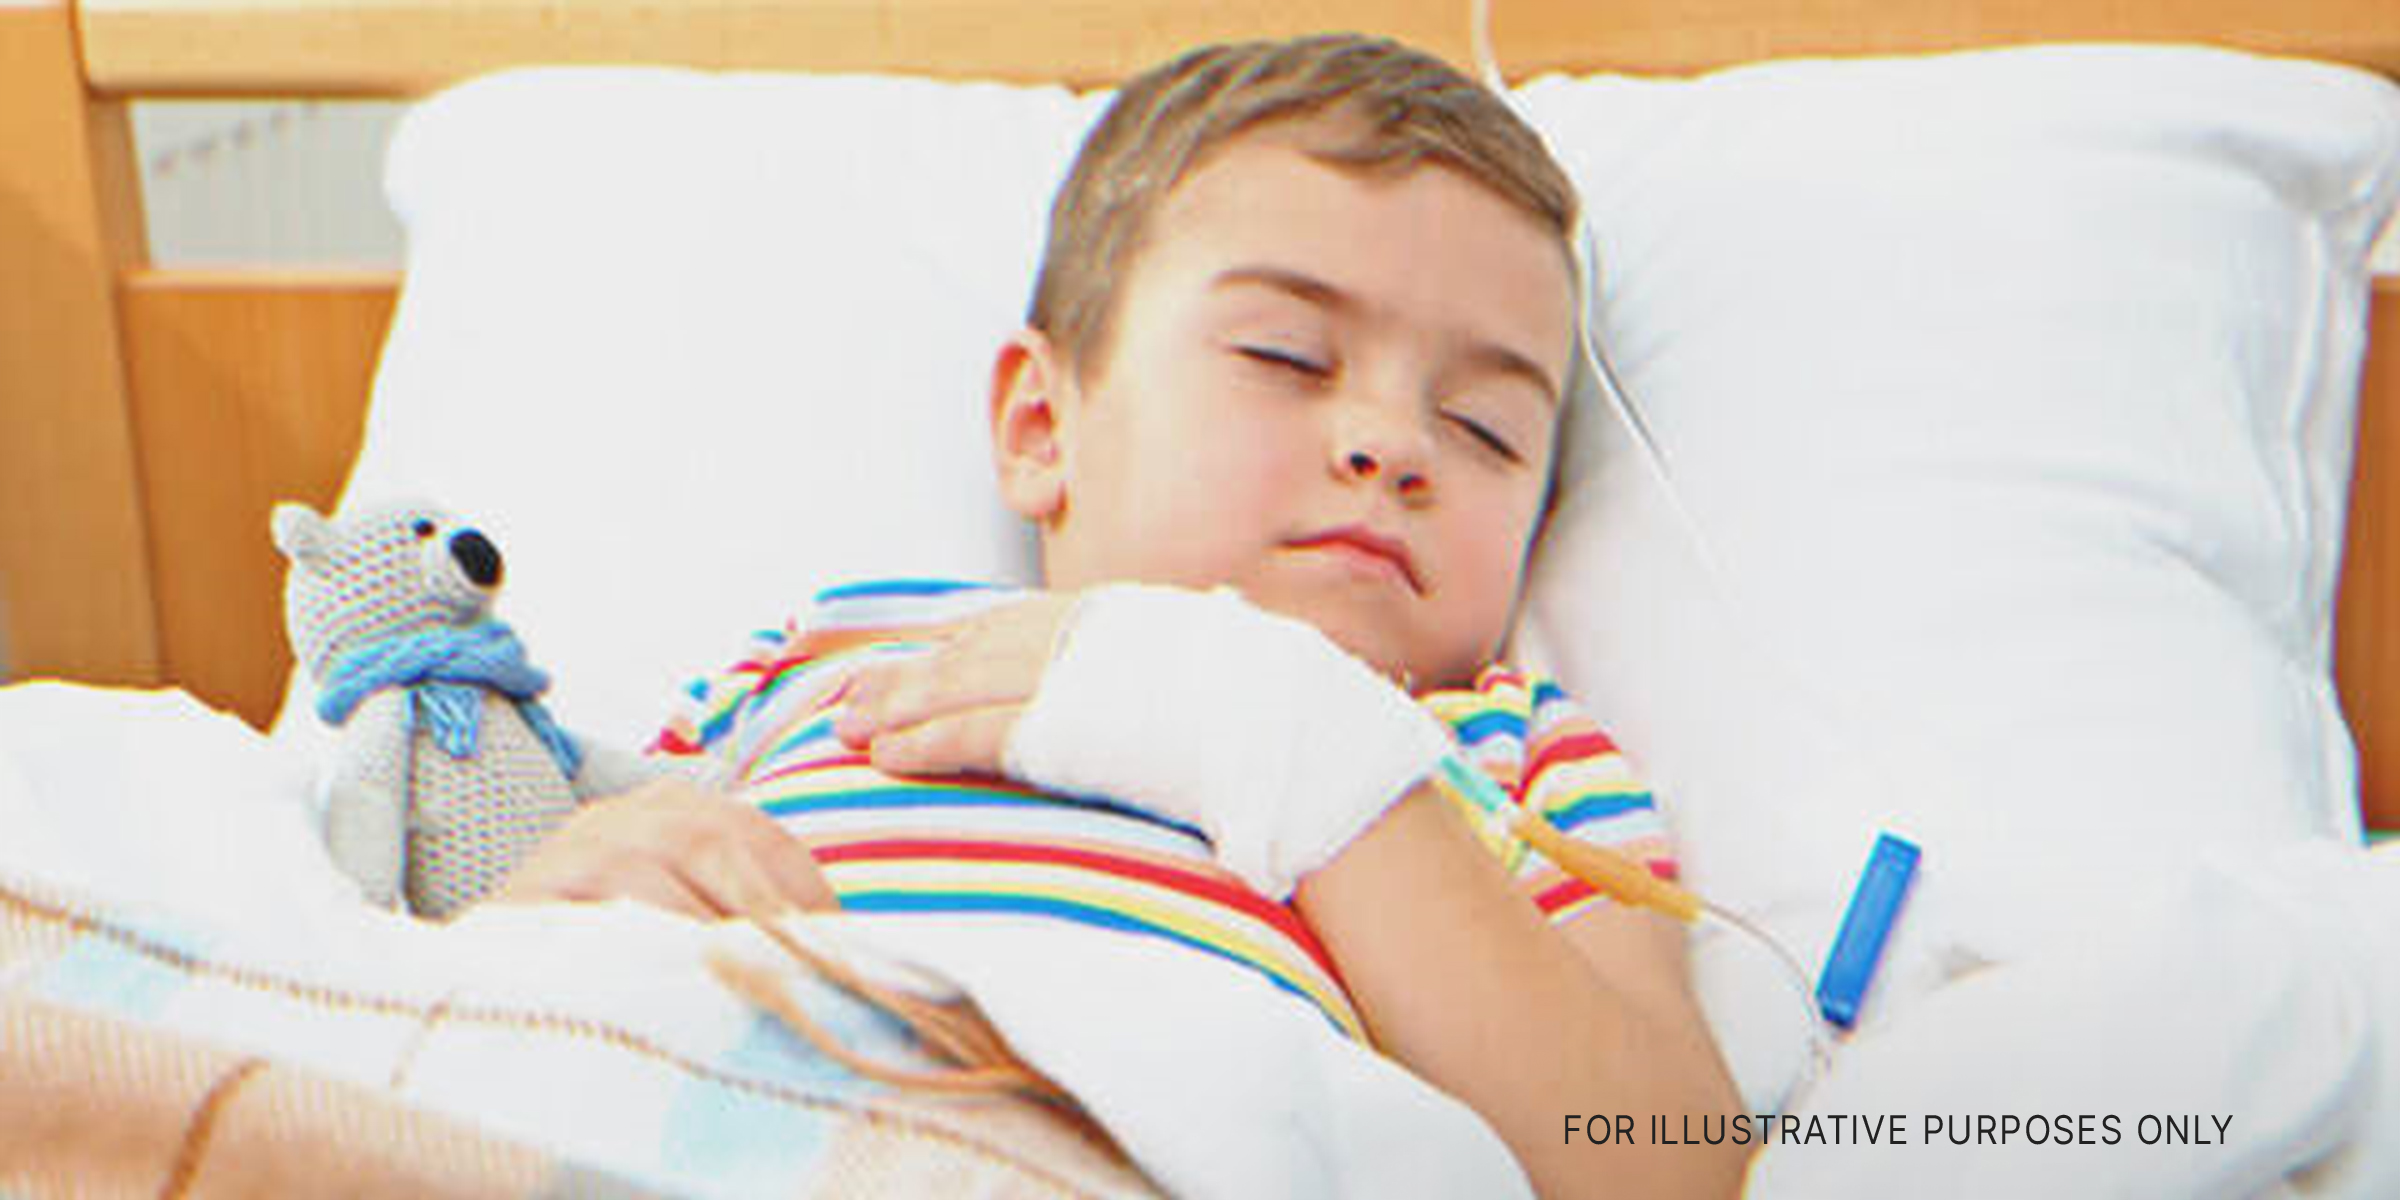 Un enfant dans un lit. | Source : Shutterstock